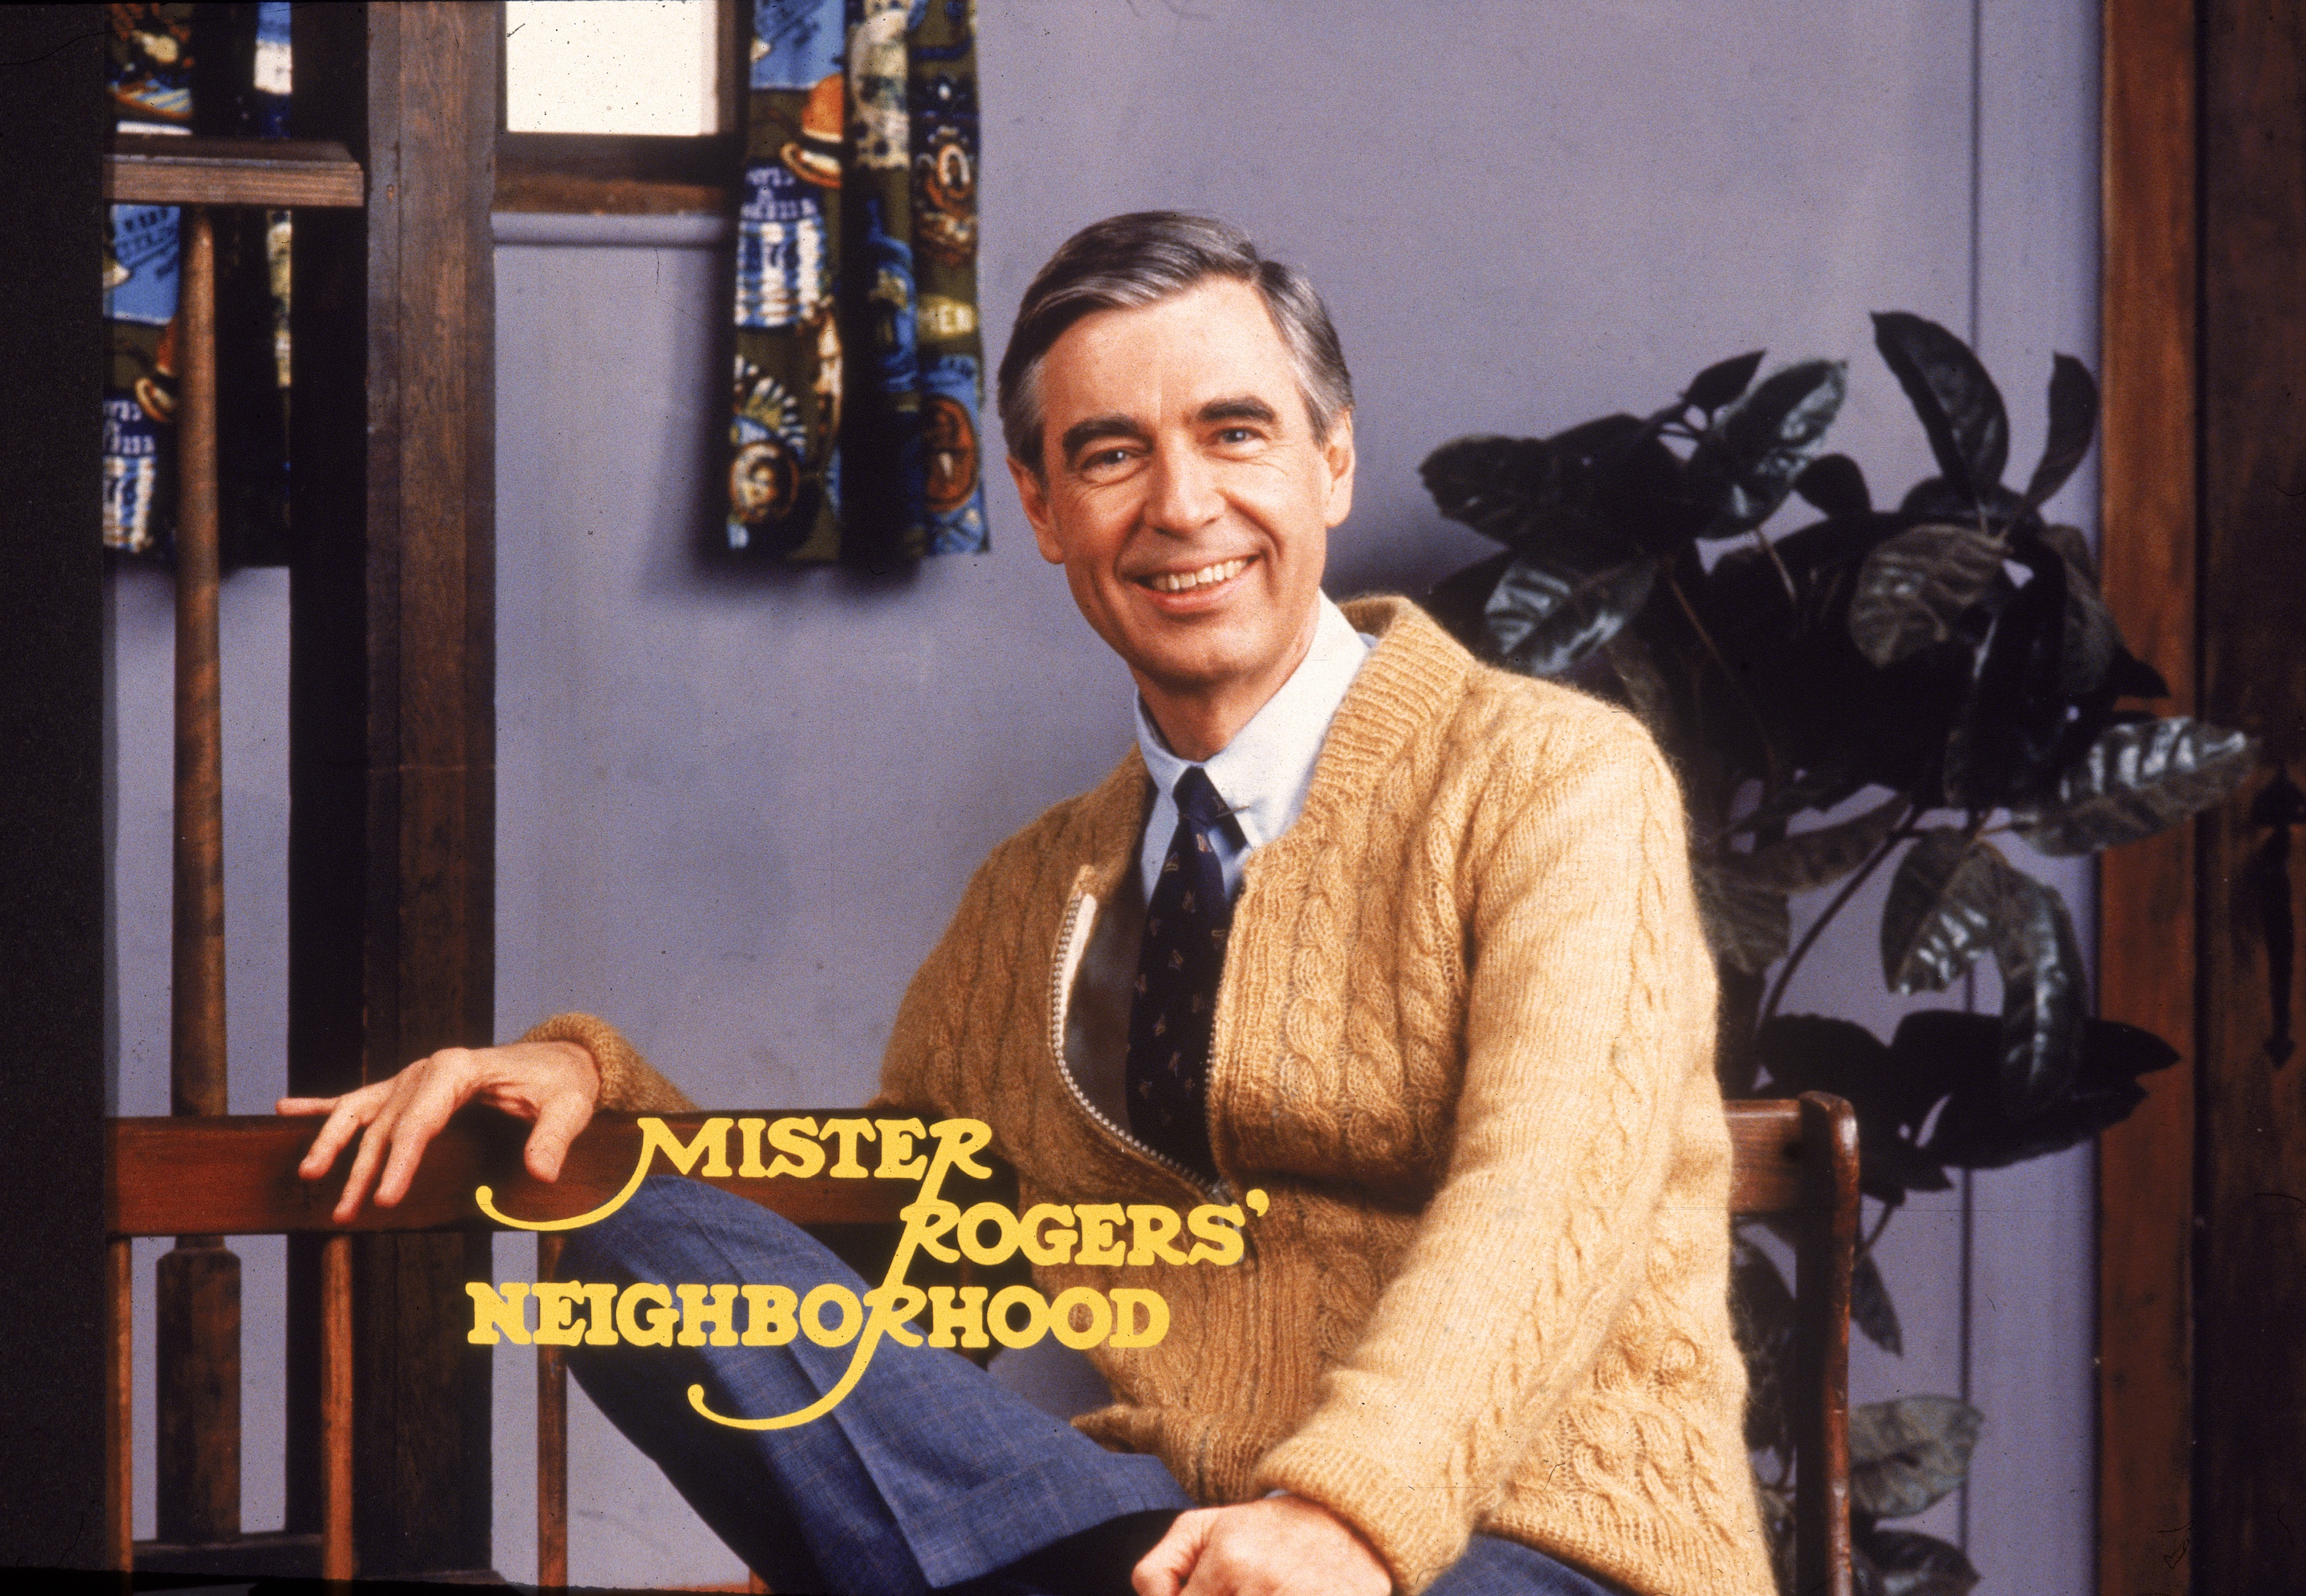 Mister Rogers Neighborhood turns 50